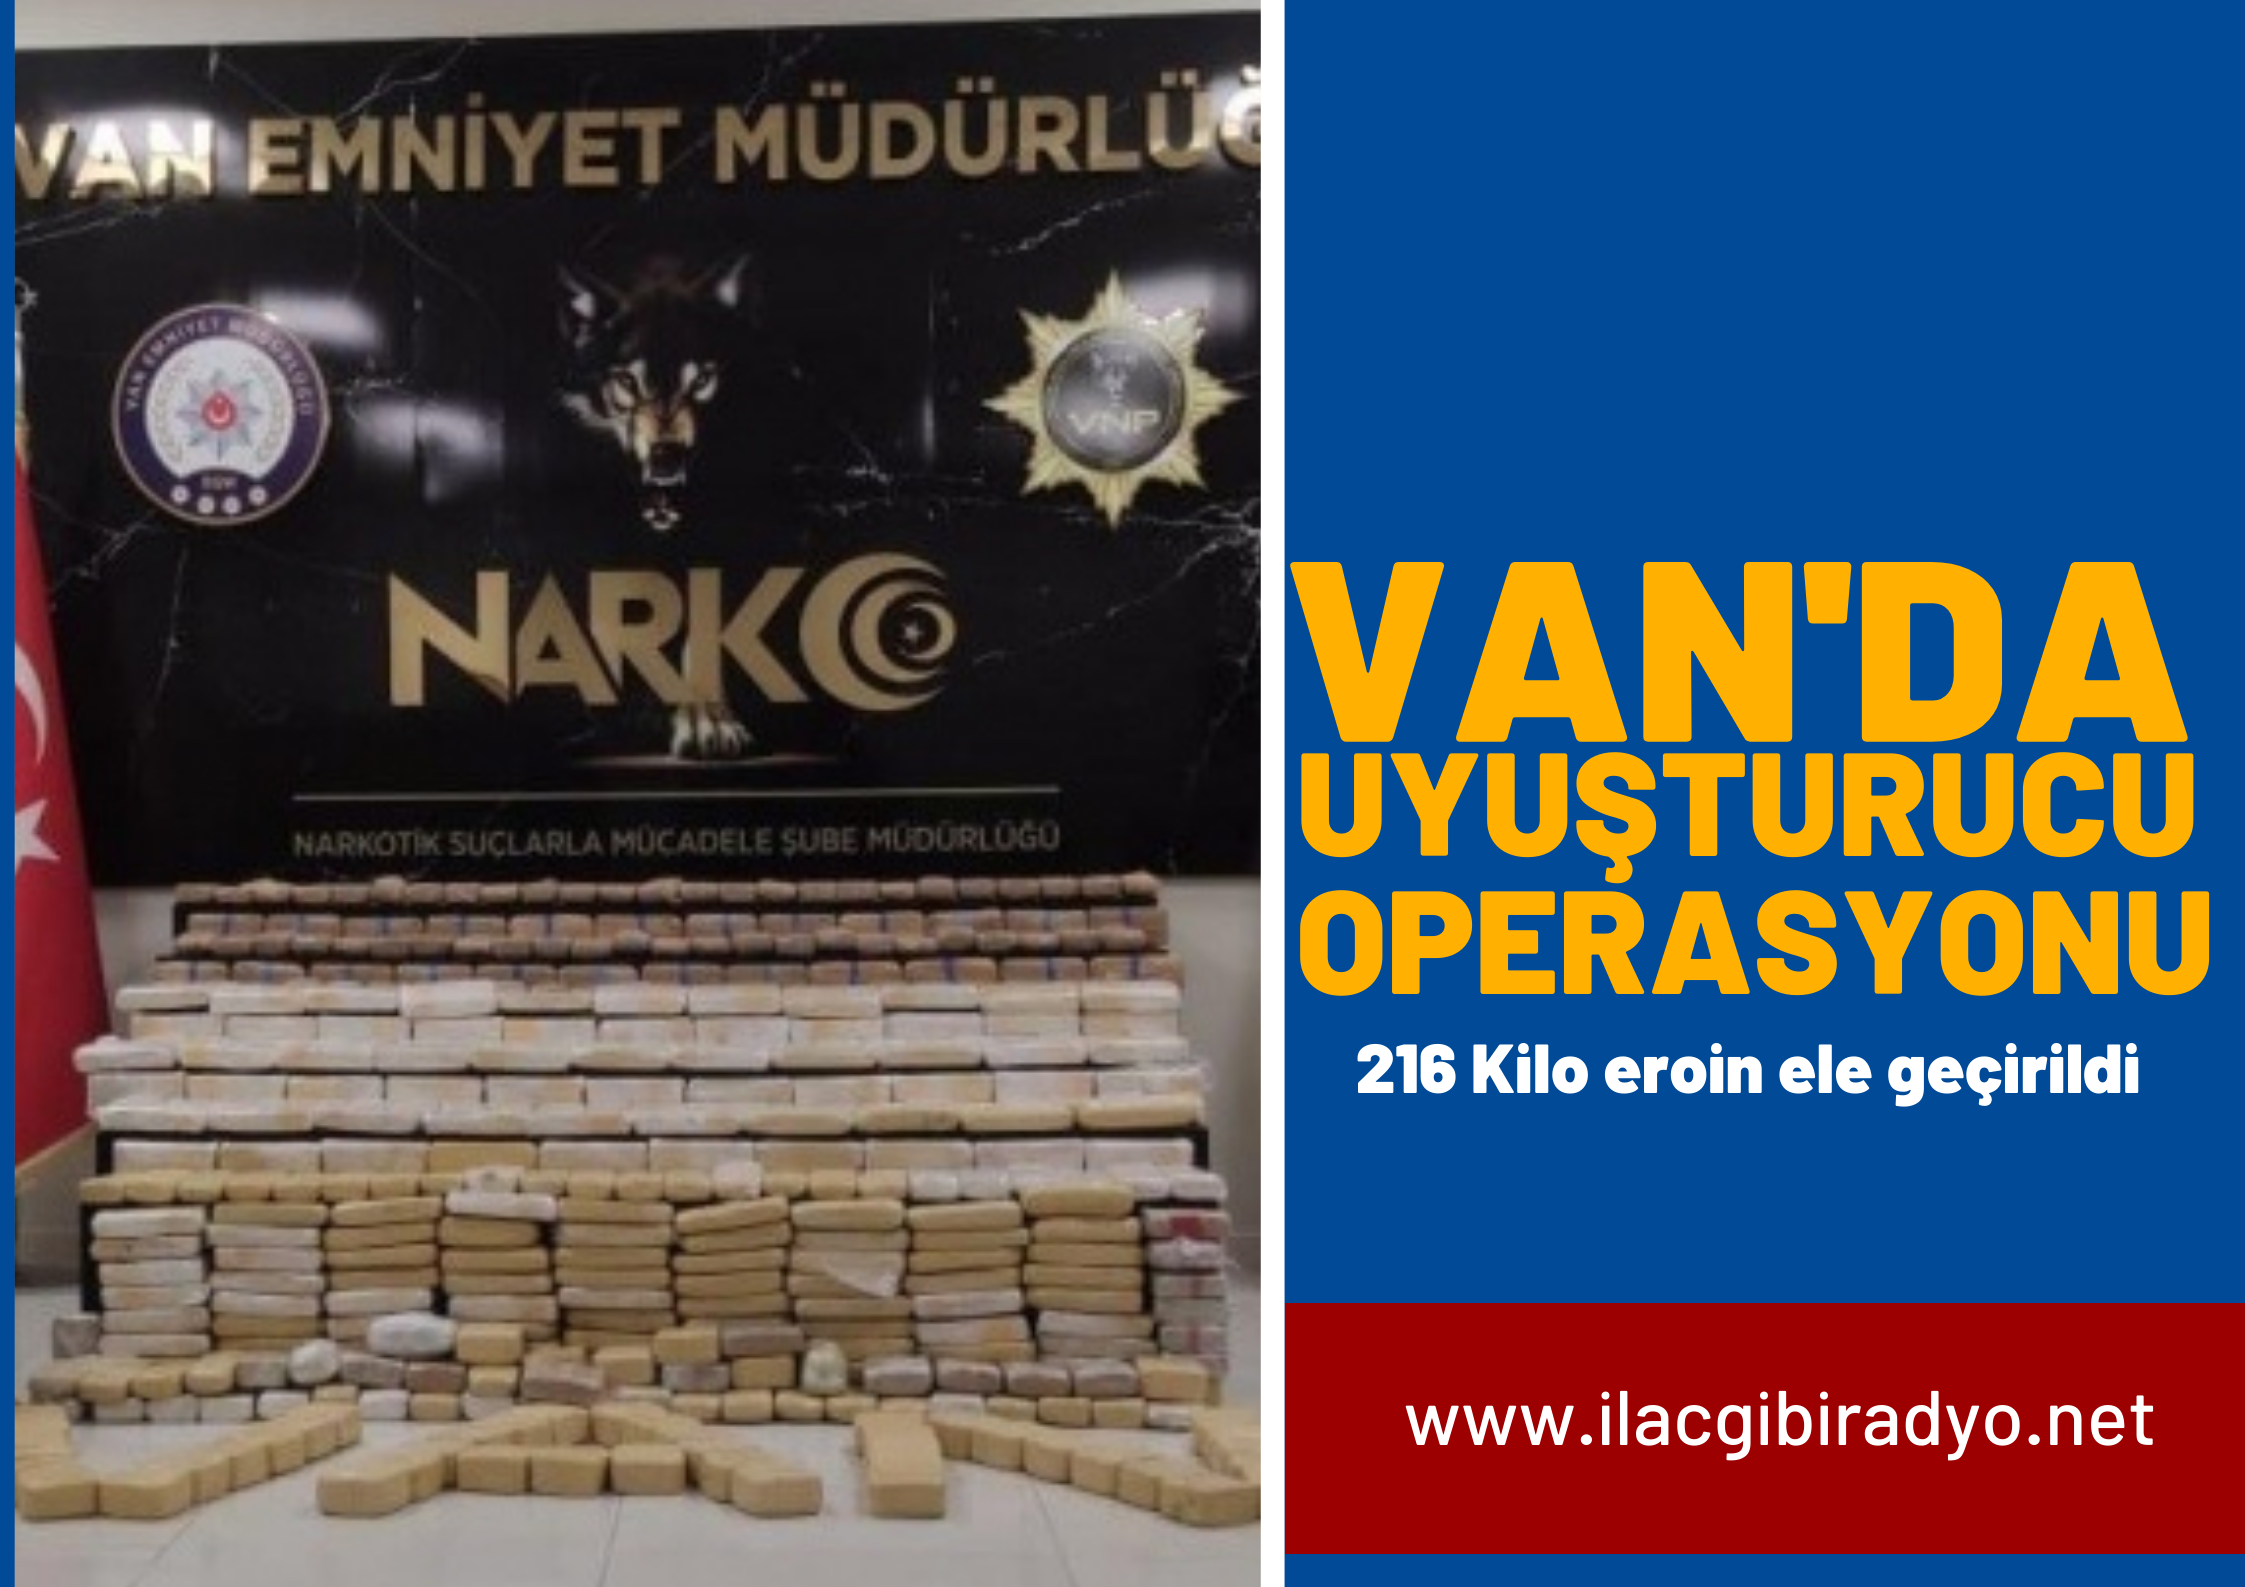 Van’da uyuşturucu operasyonu: 216 kilo eroin ele geçirildi!